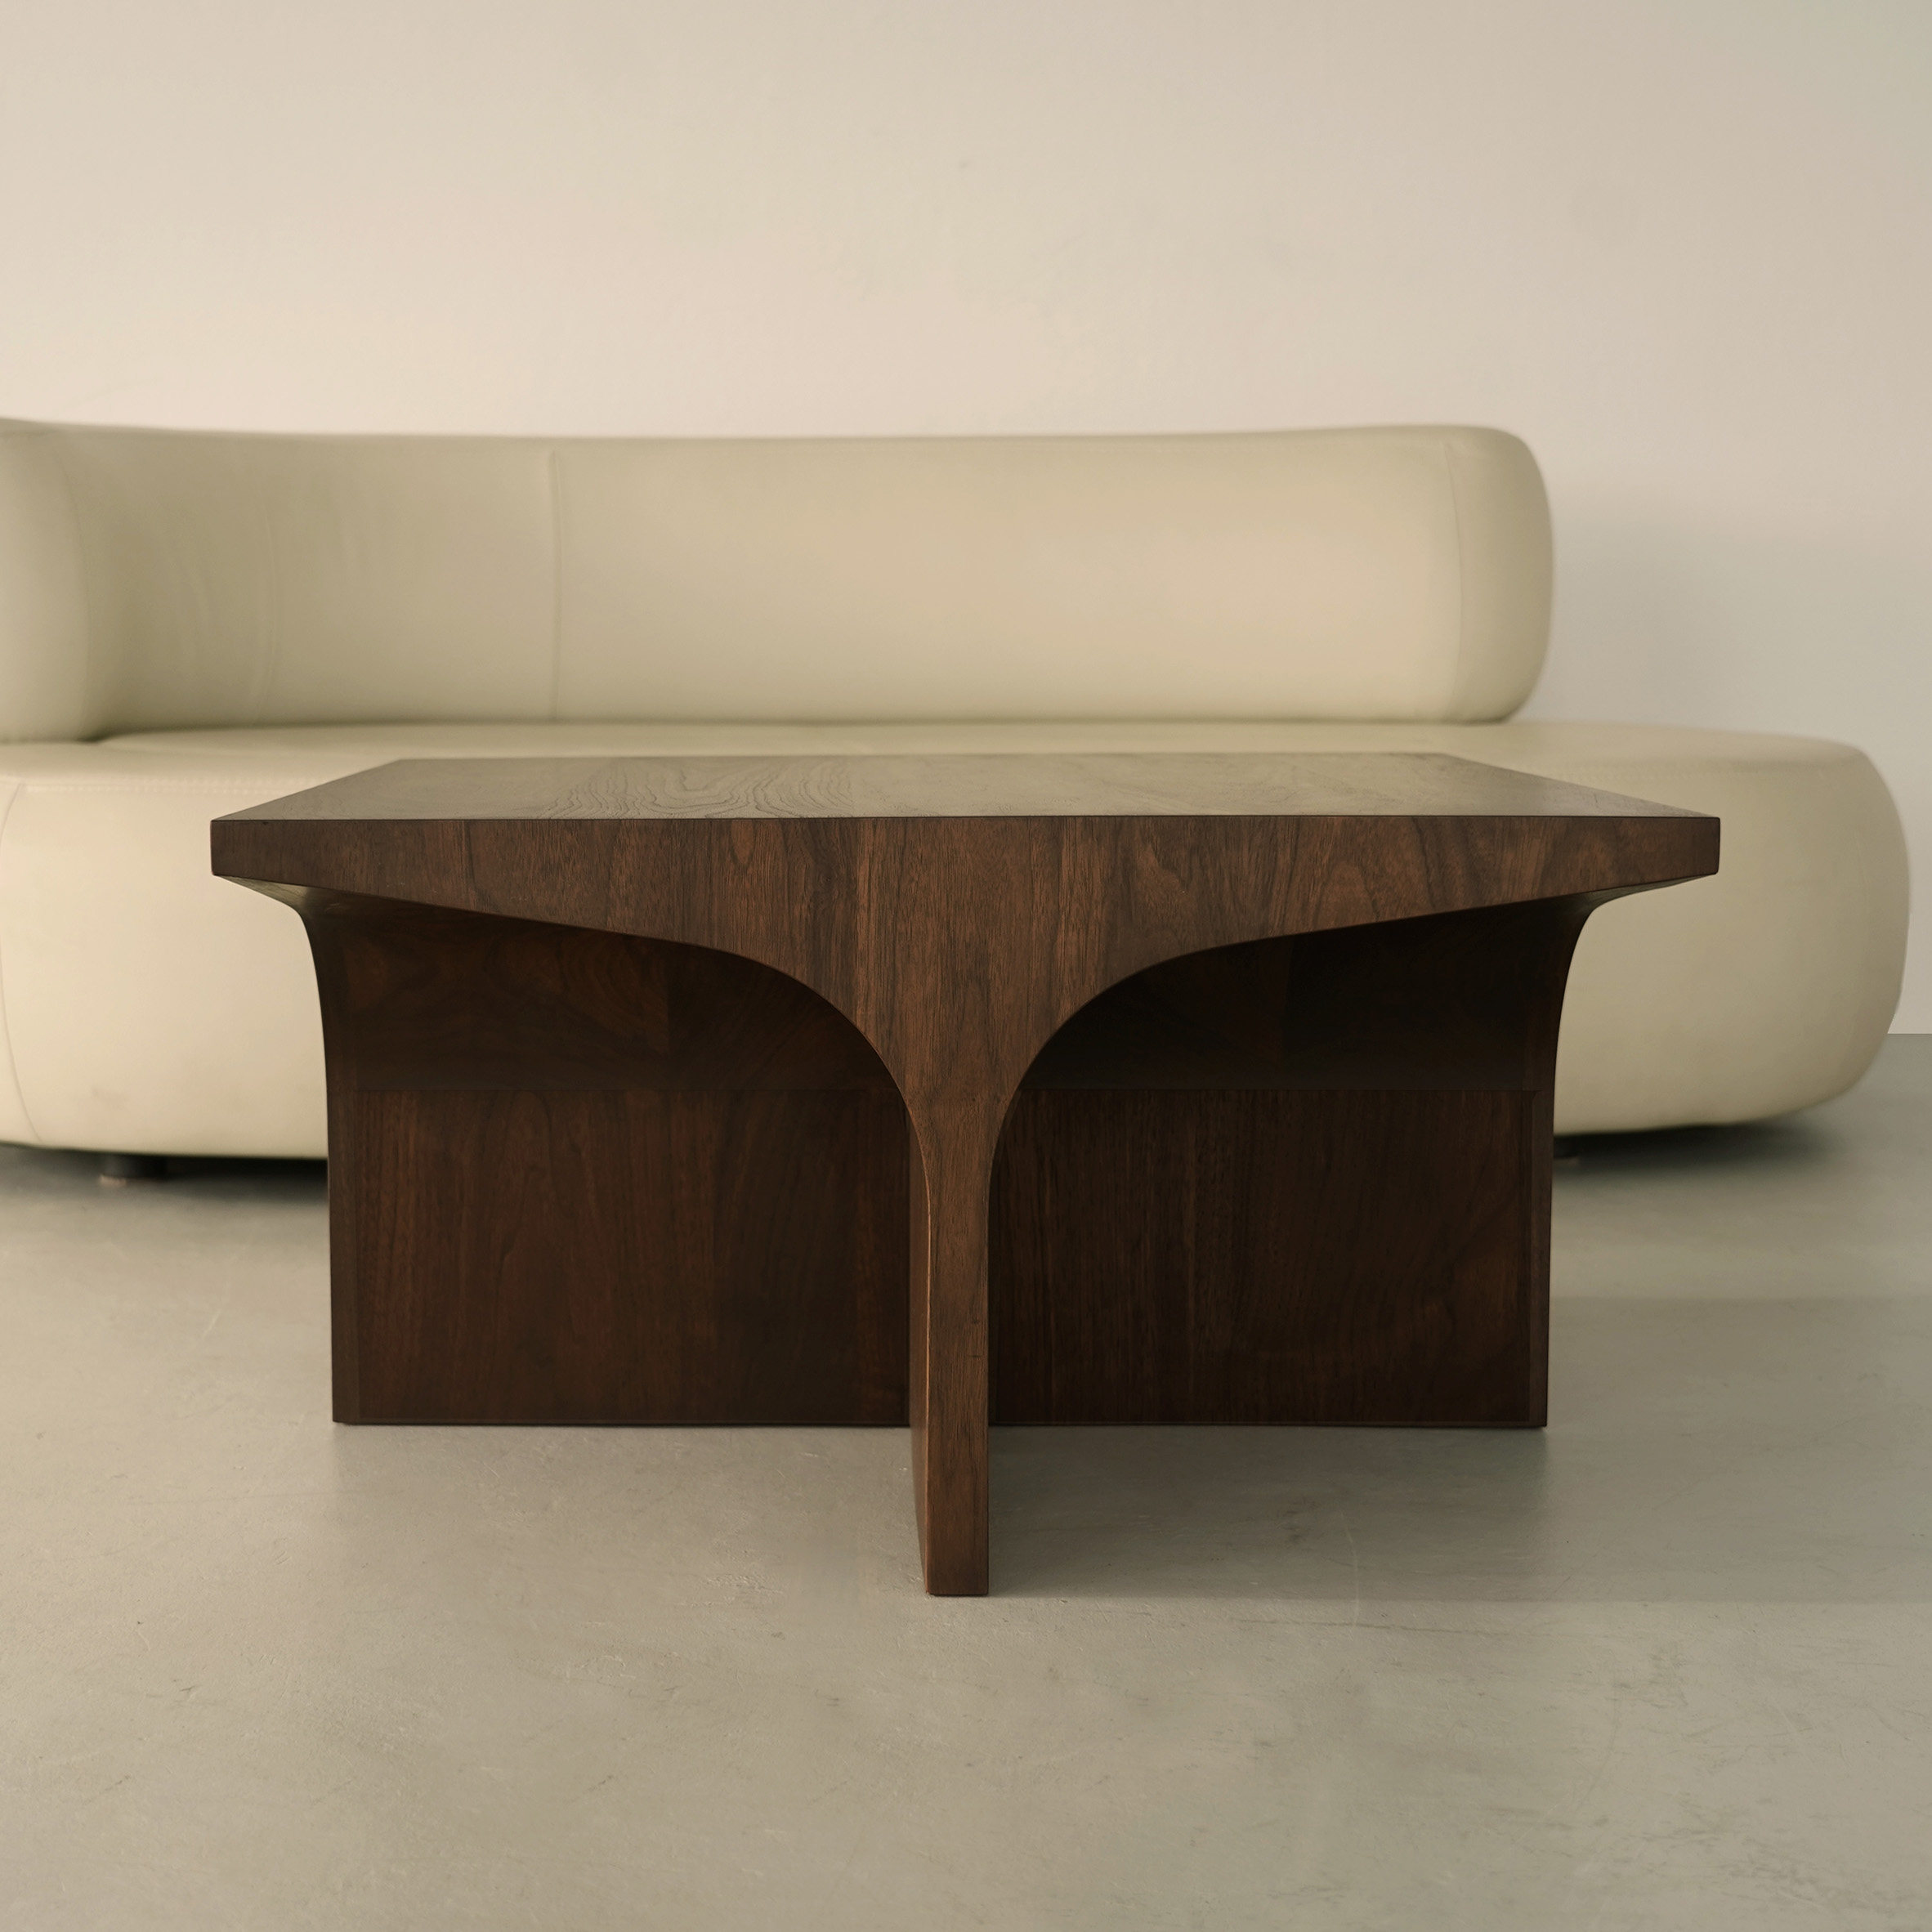 Ten furniture designs presented at Milan design week